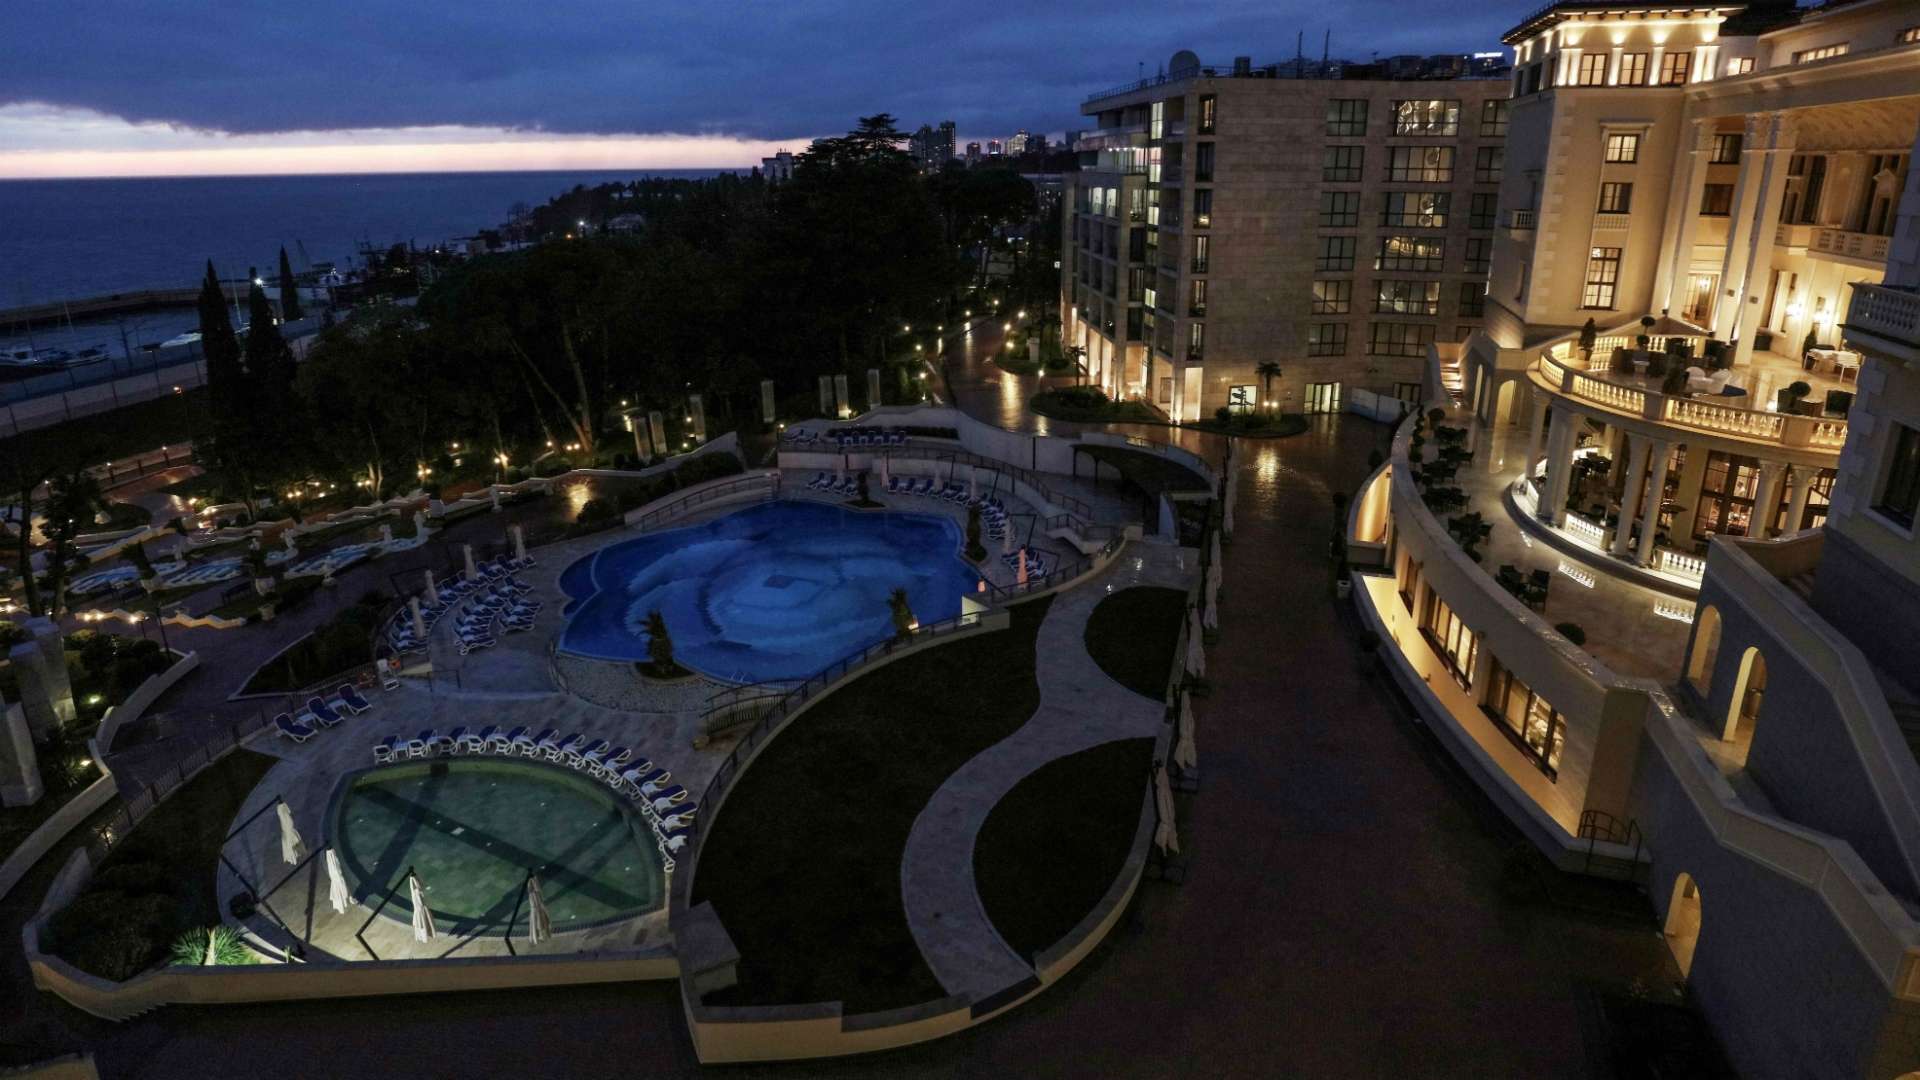 Swissotel Resort Sochi Kamelia, local onde a seleção brasileira ficará hospedada e realizará seus treinos